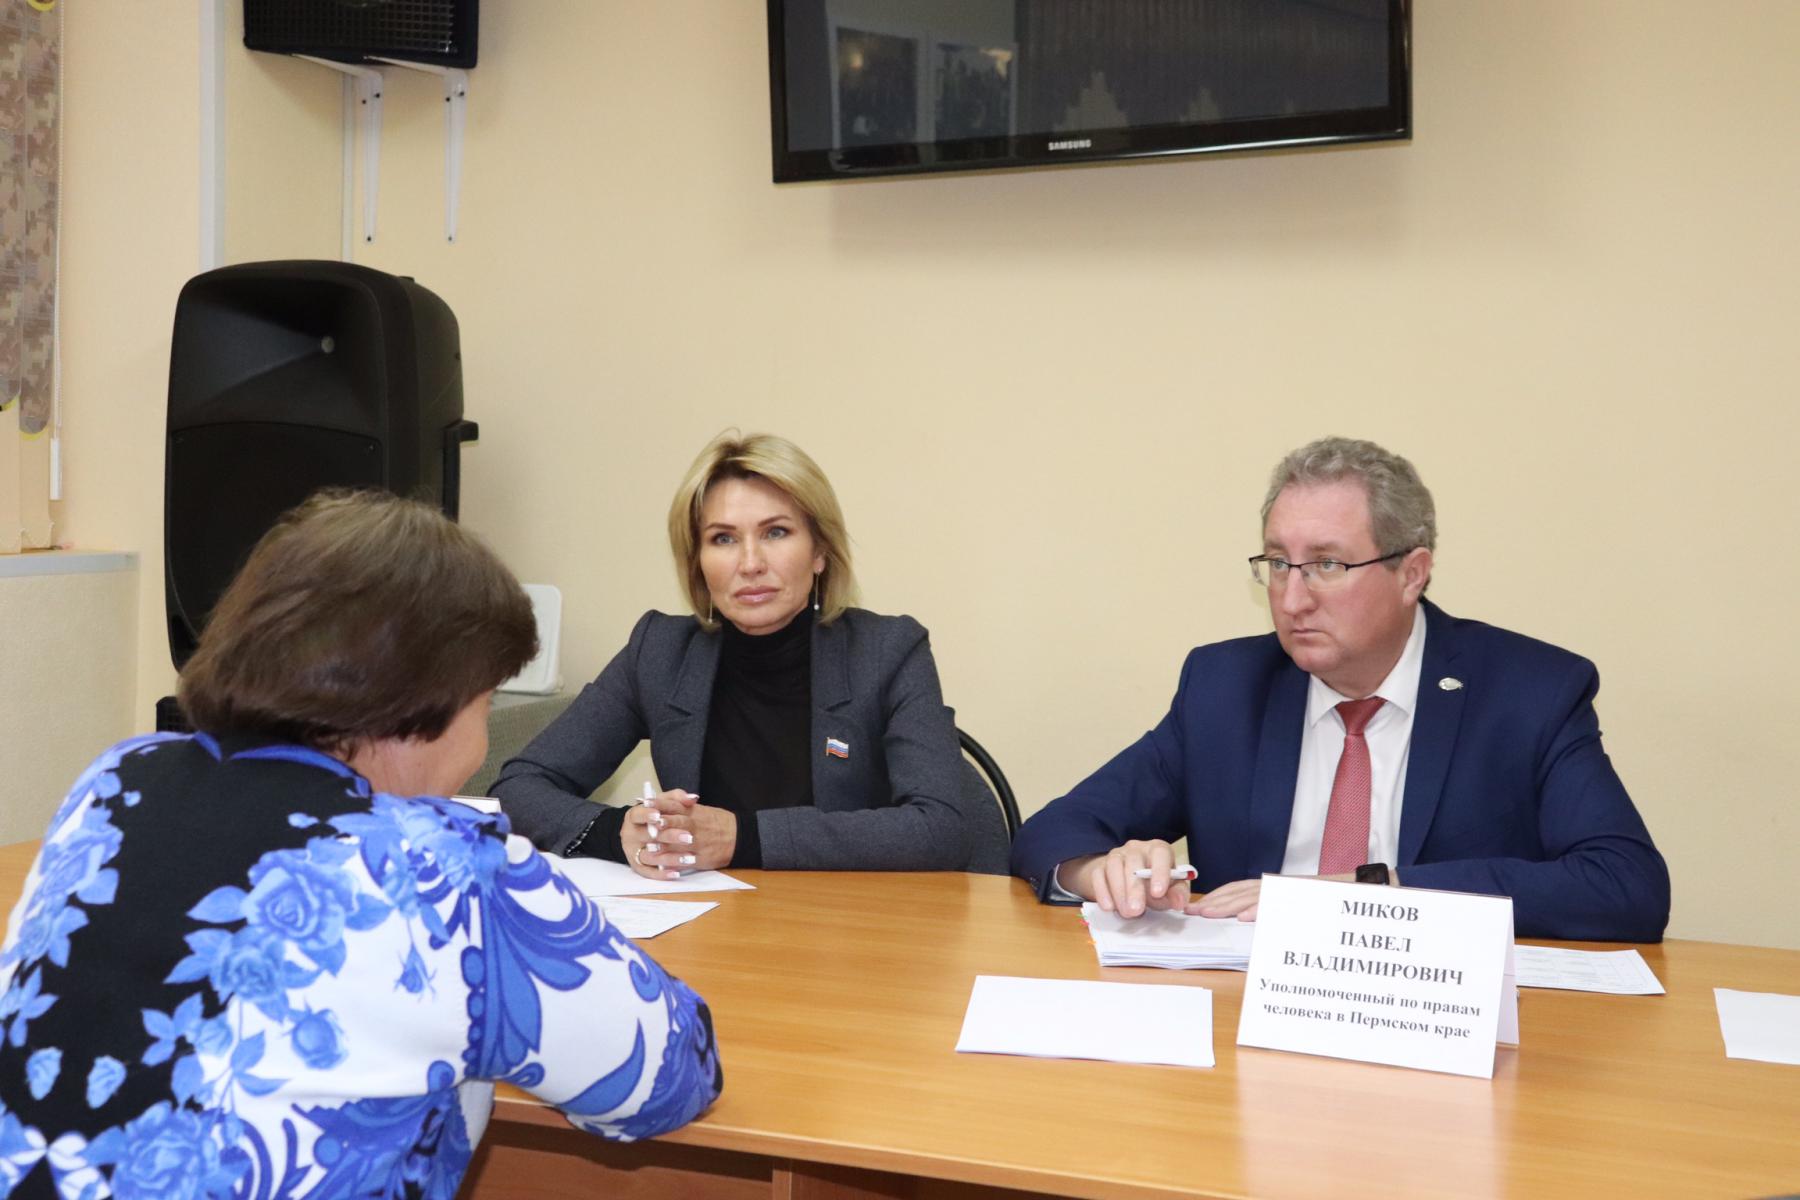 Павел Миков и депутат Татьяна Шестакова пообещали помочь инвалиду, для которого шесть ступенек стали преградой мобильности. Всего на прием пришло 12 человек, рассчитывающих на защиту